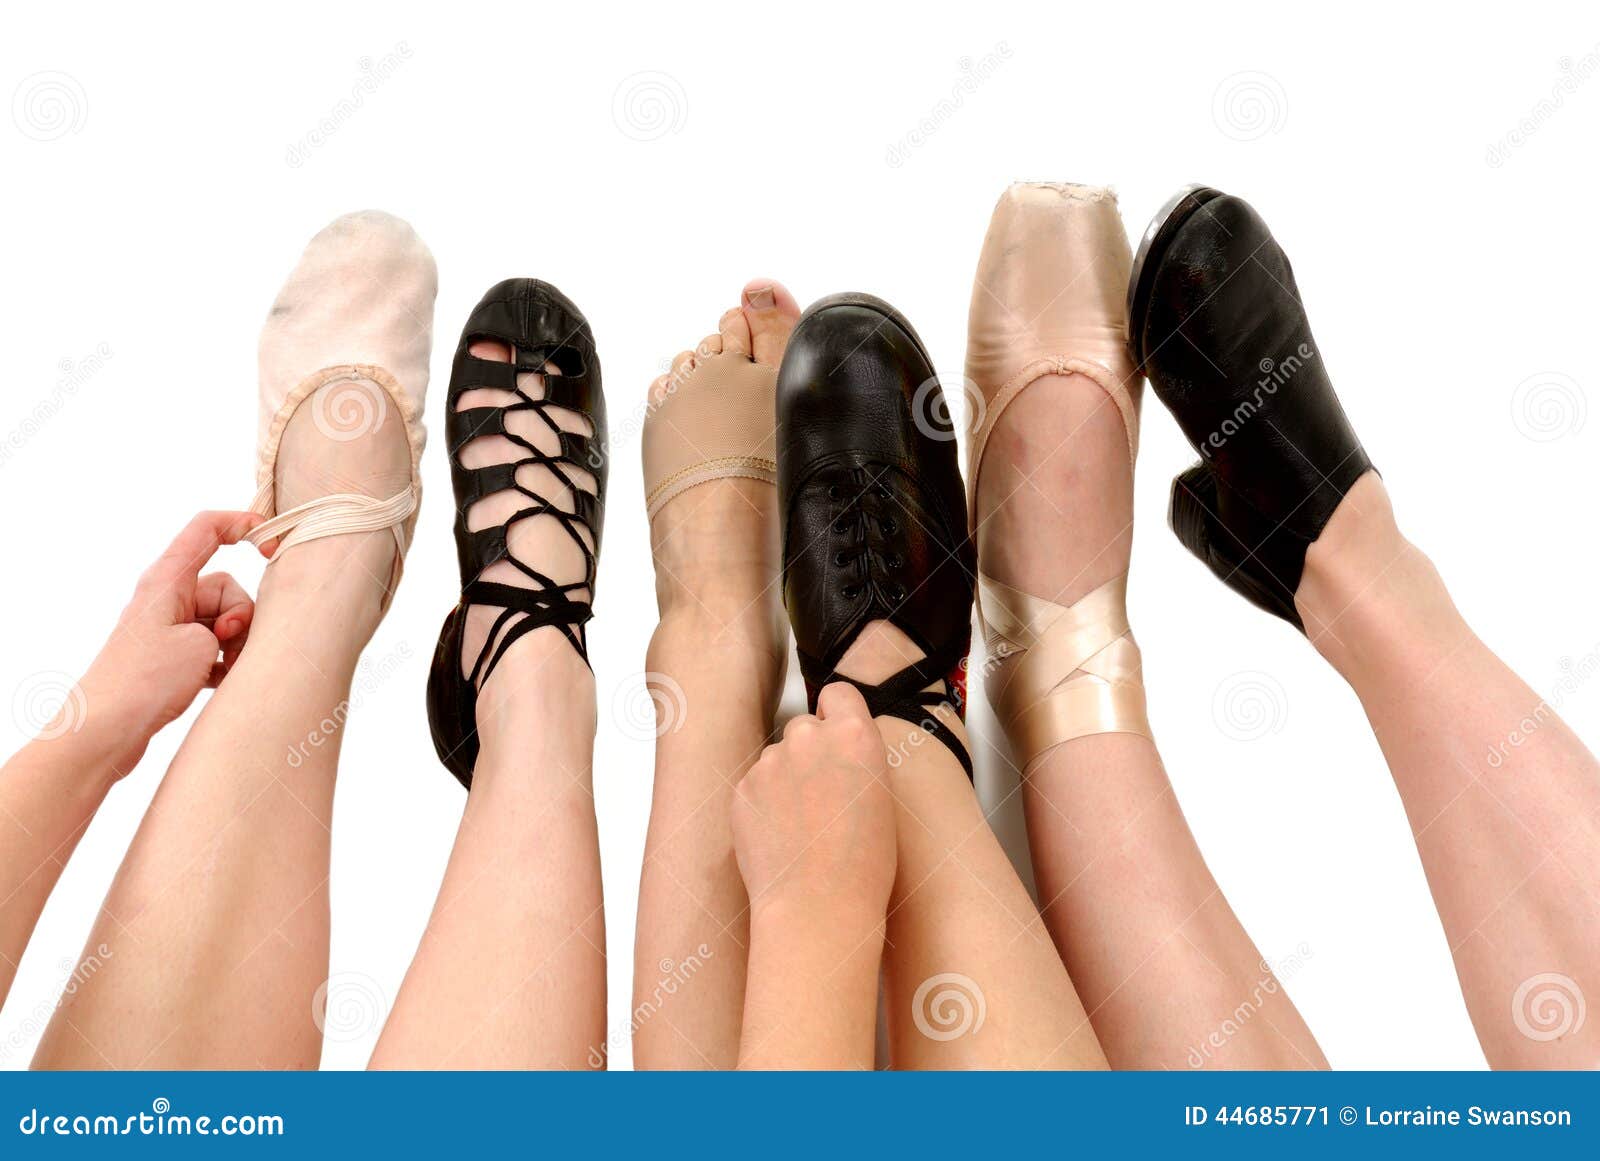 danza shoes